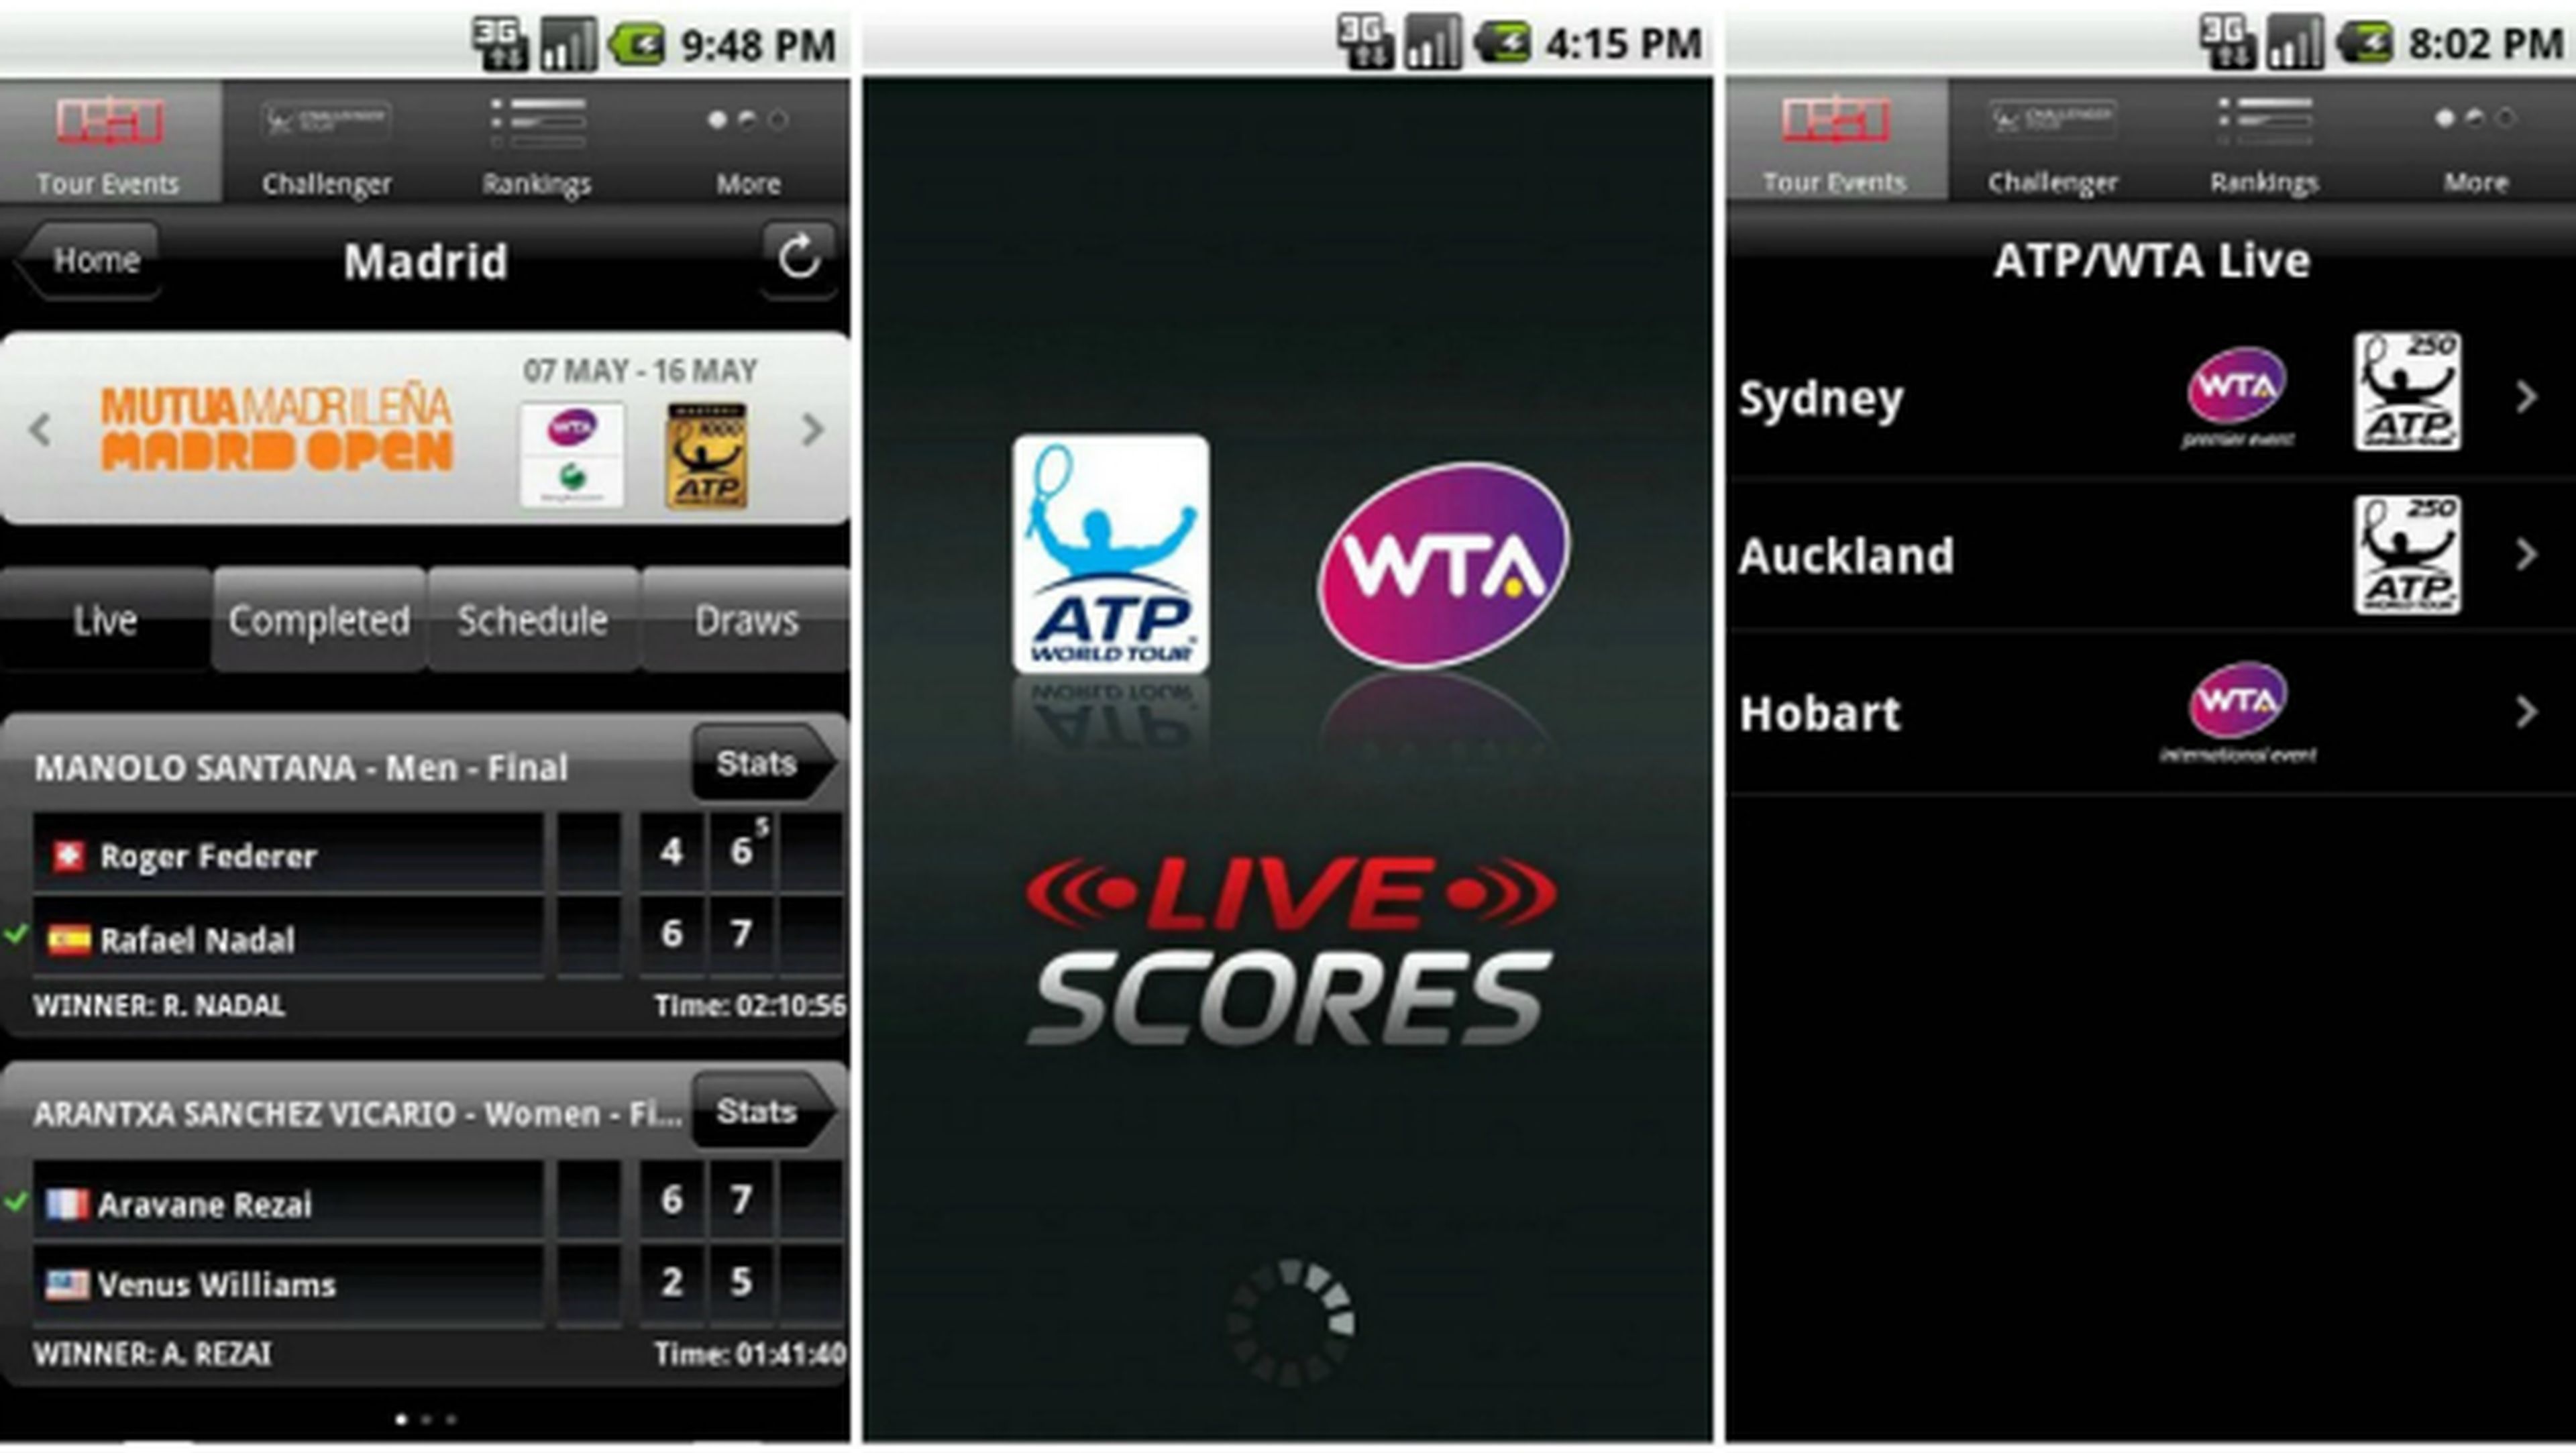 La app oficial de la ATP/WTA para seguir Wimbledon 2015